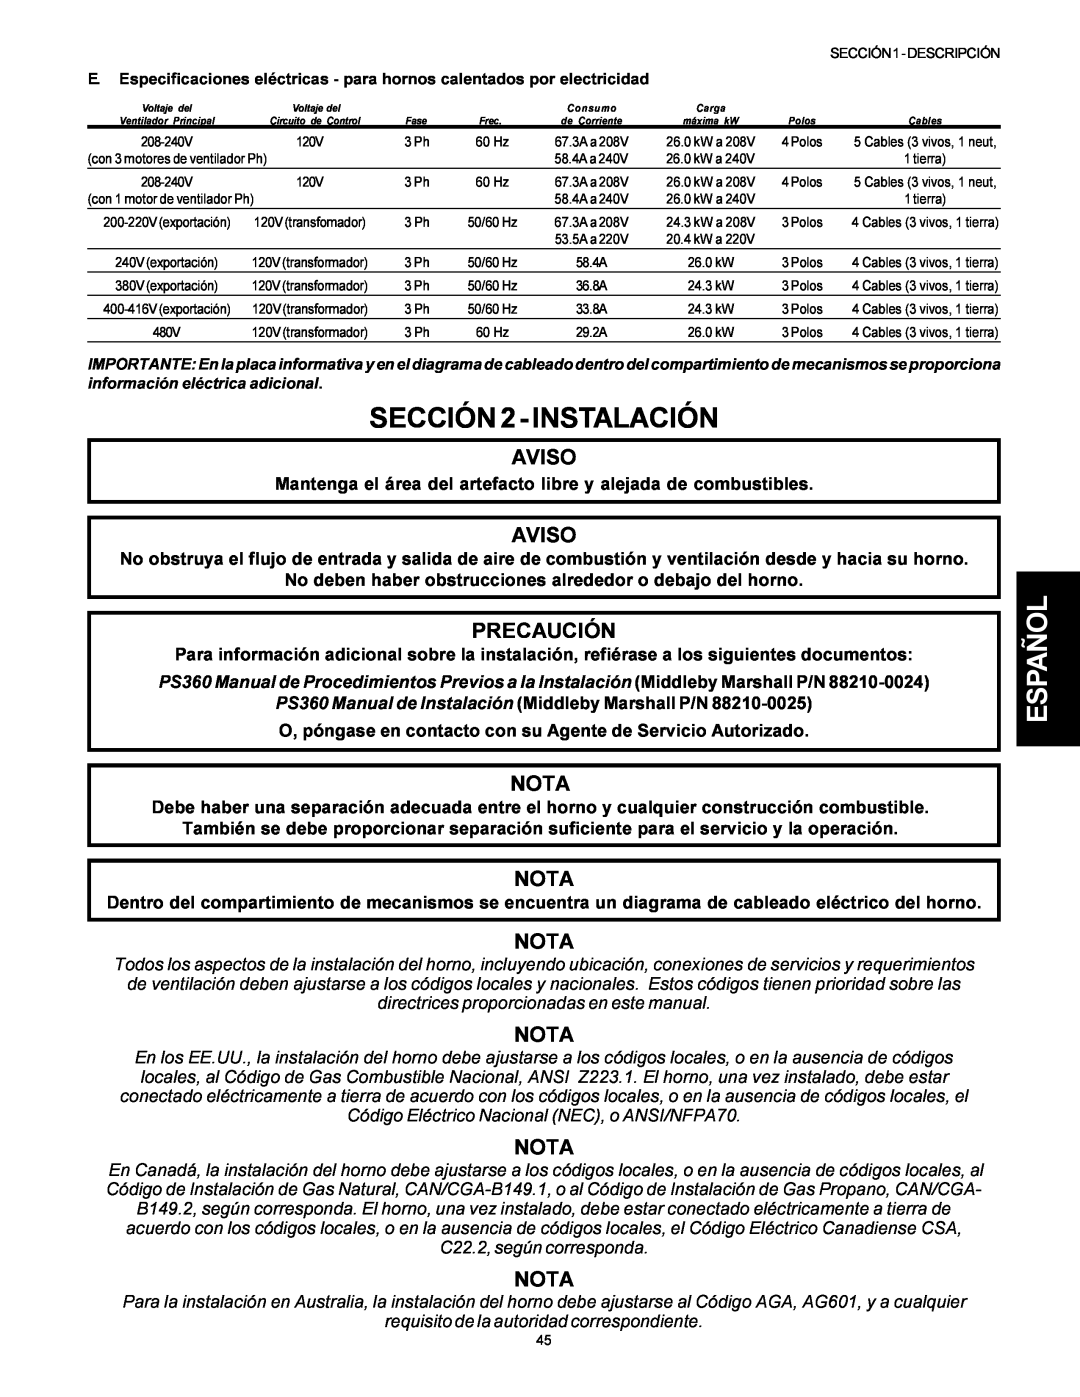 Middleby Marshall PS314SBI installation manual SECCIÓN 2 - INSTALACIÓN, Español, Aviso, Precaución, Nota 